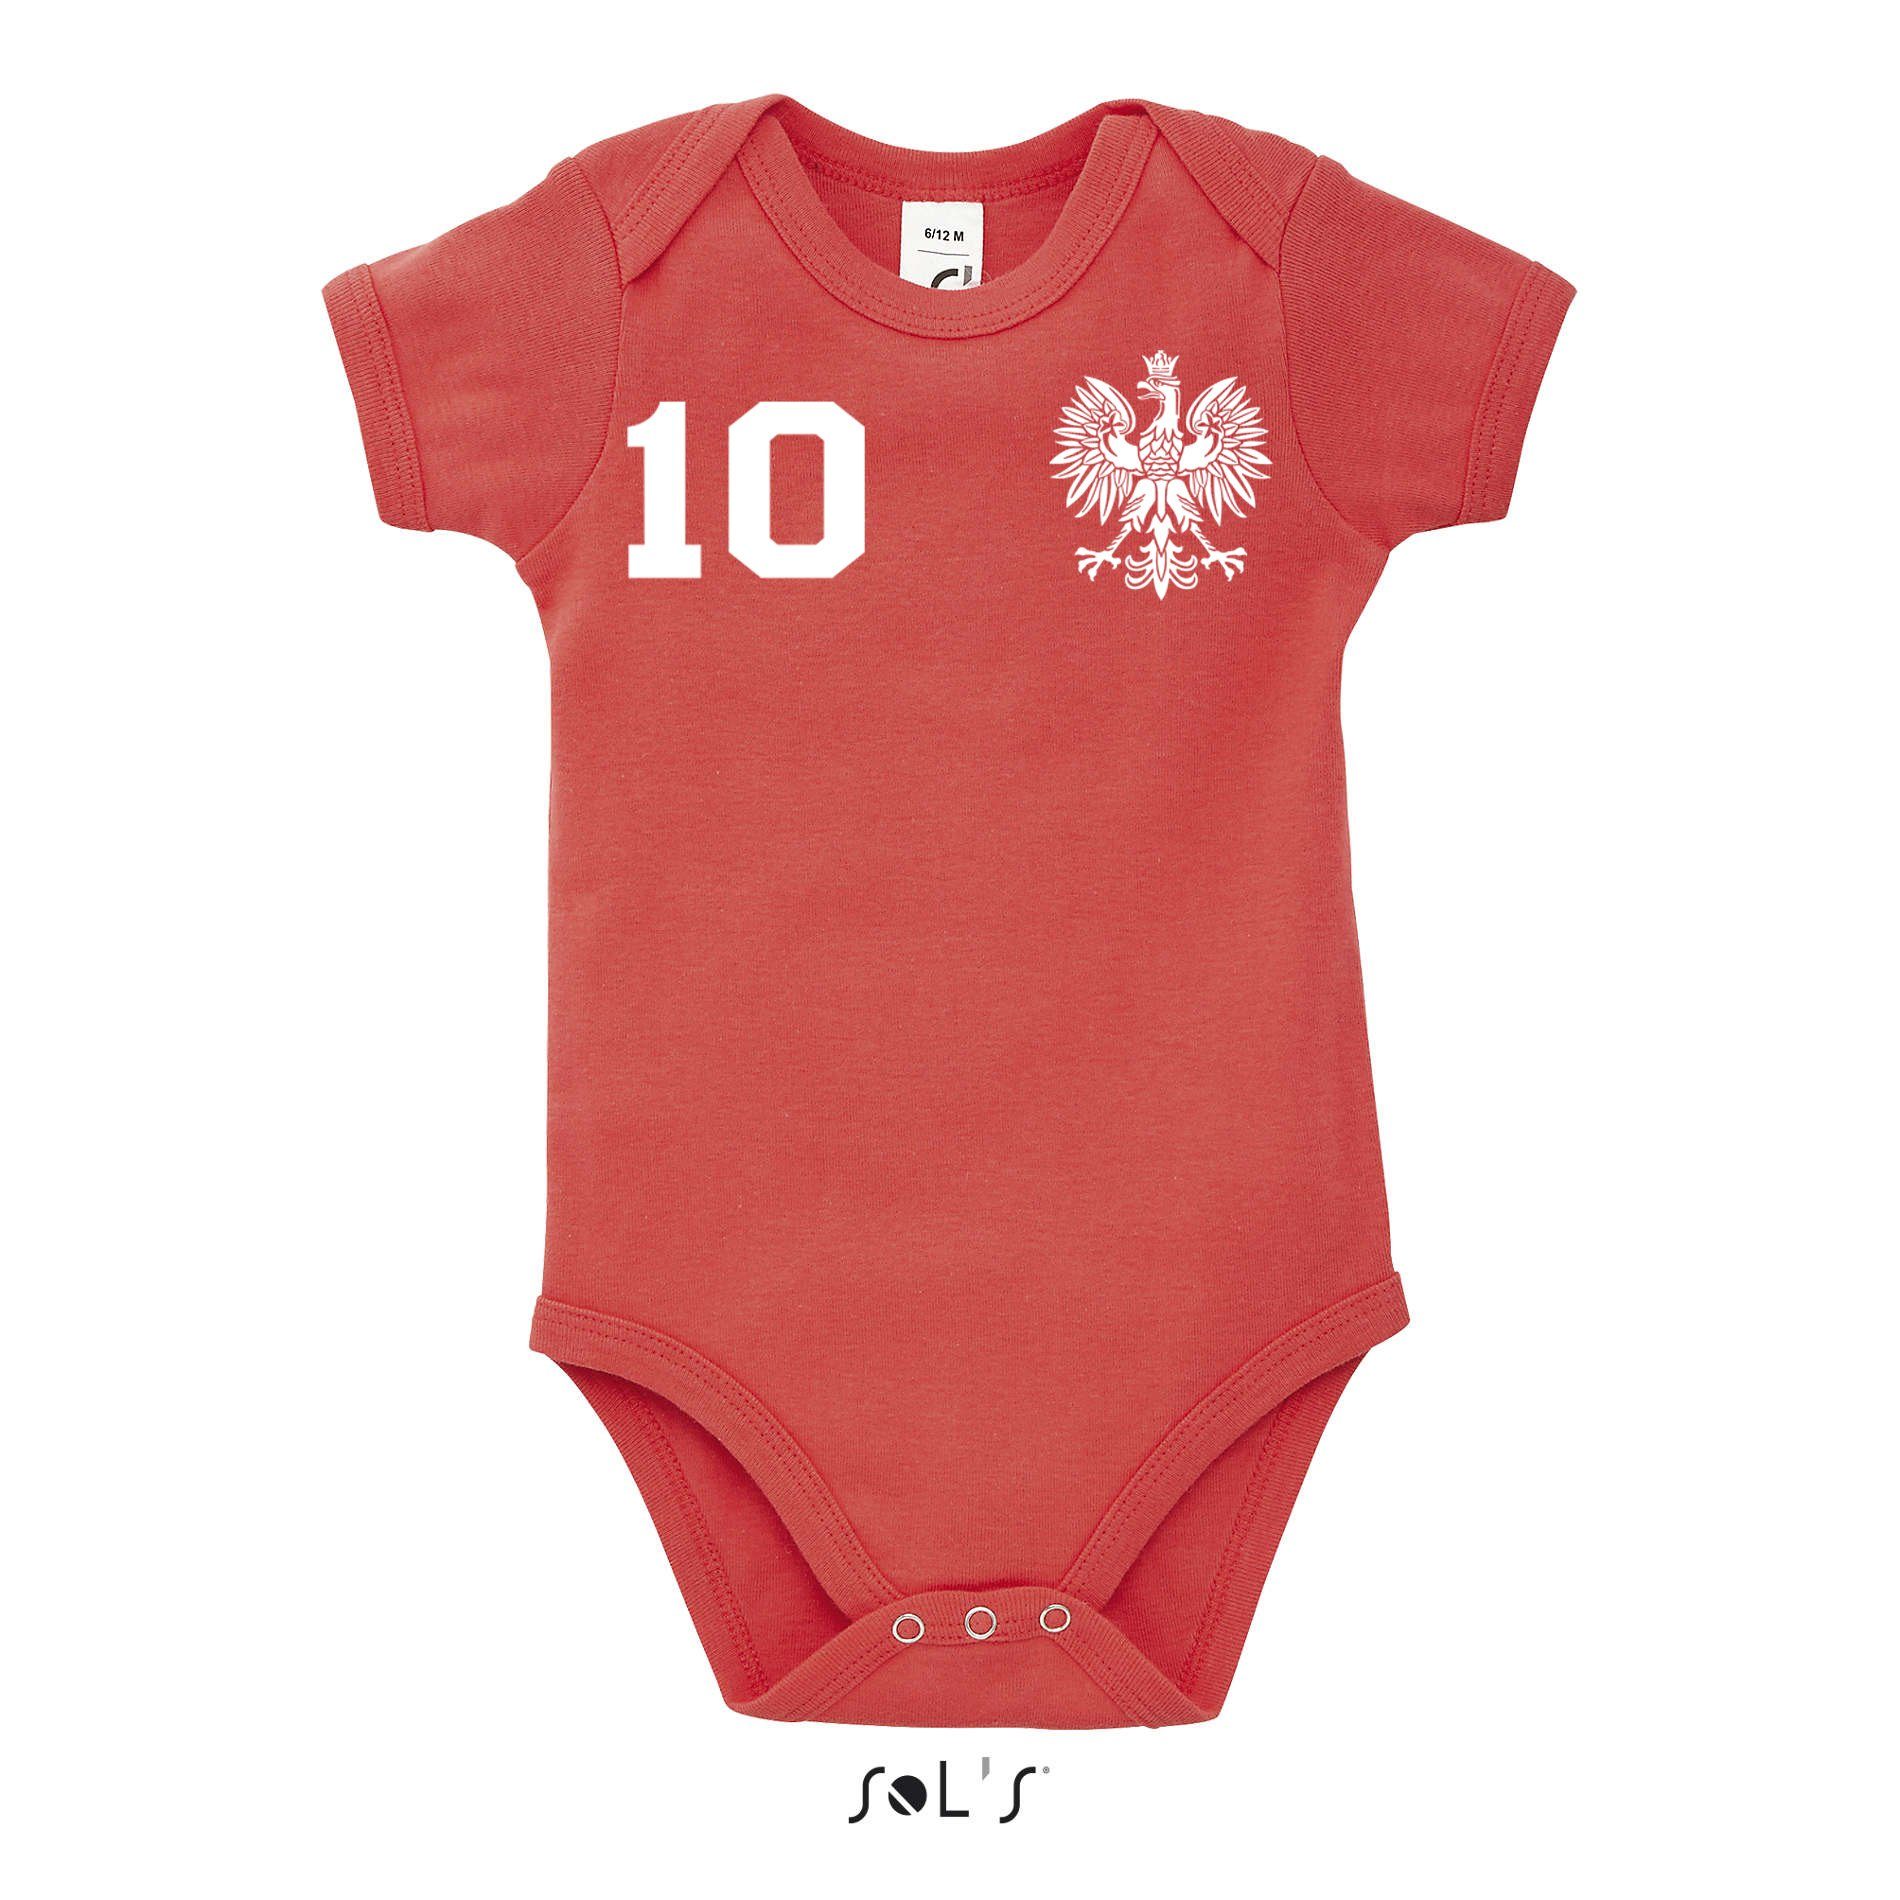 Weiss/Rot Fußball EM Trikot Blondie Polska Sport & WM Brownie Meister Polen Strampler Baby Europa Kinder